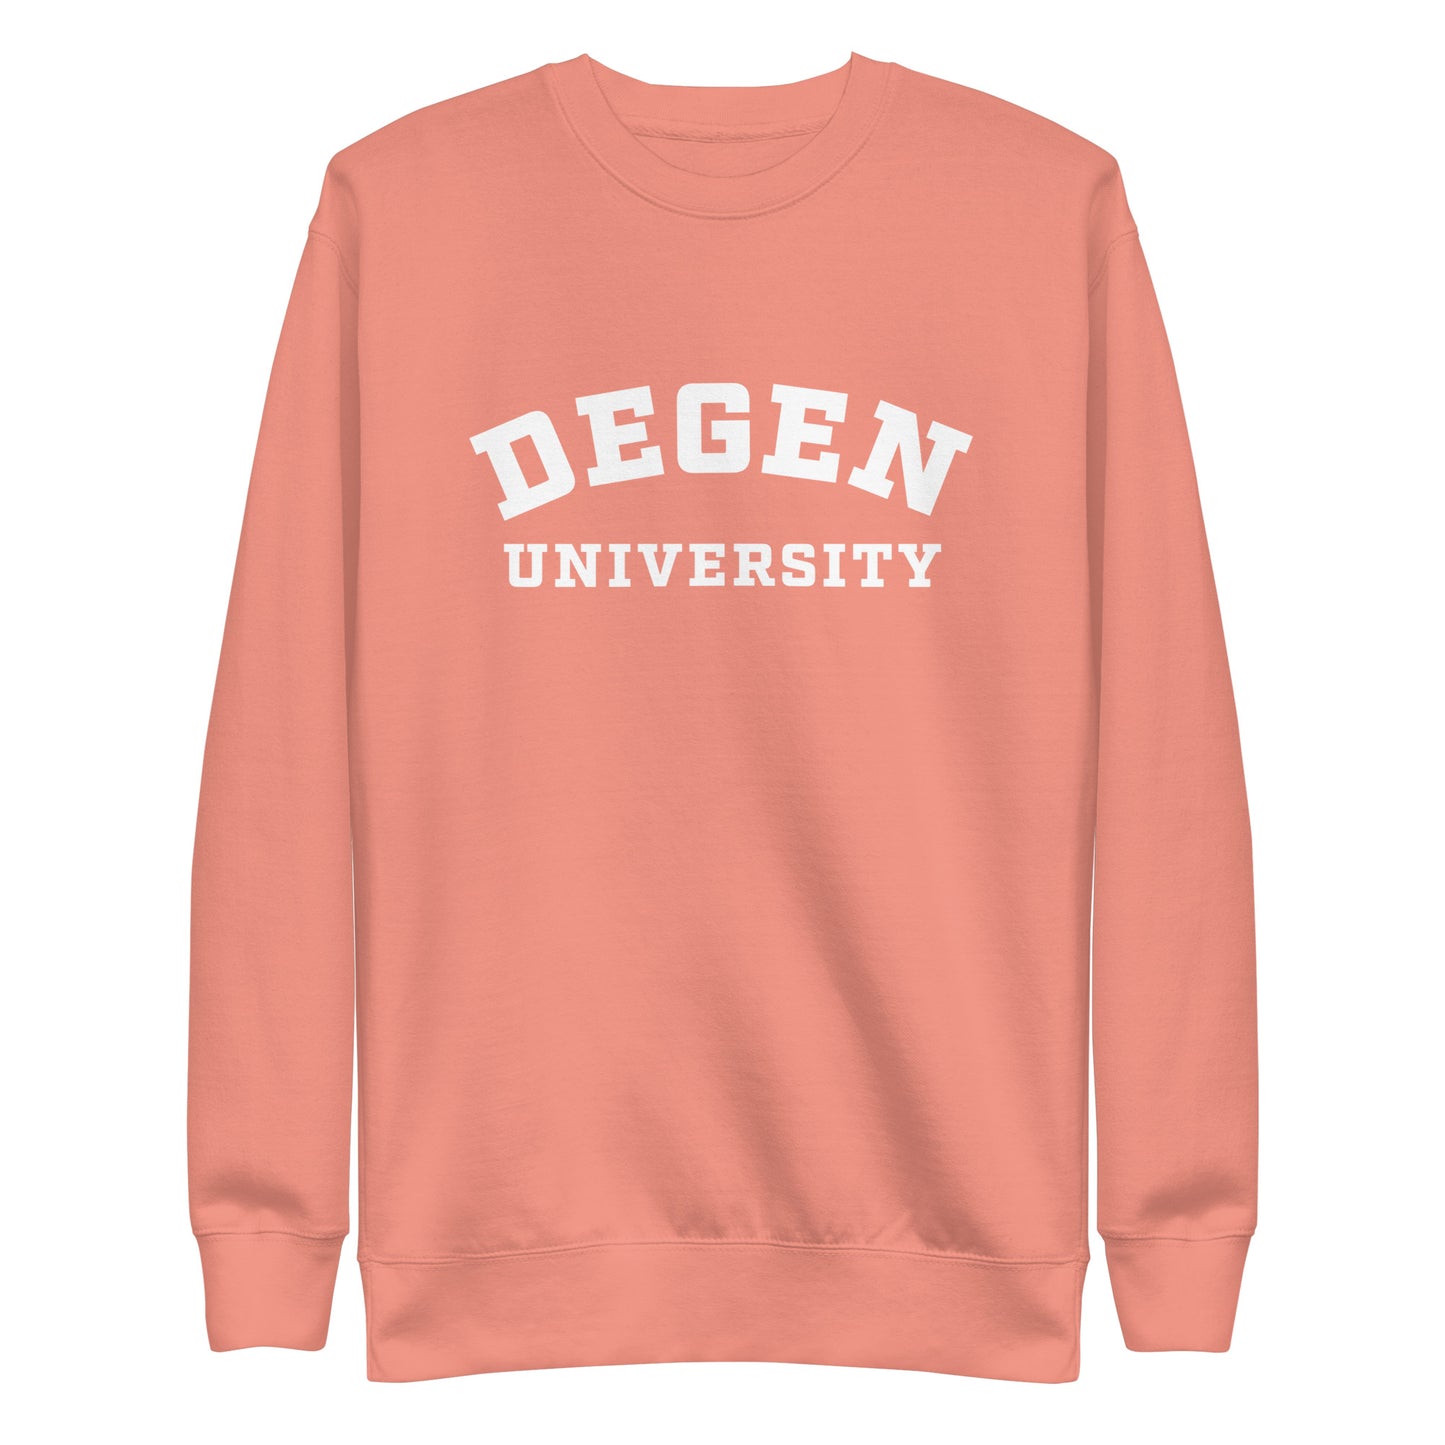 Degen University - Unisex Premium Sweatshirt